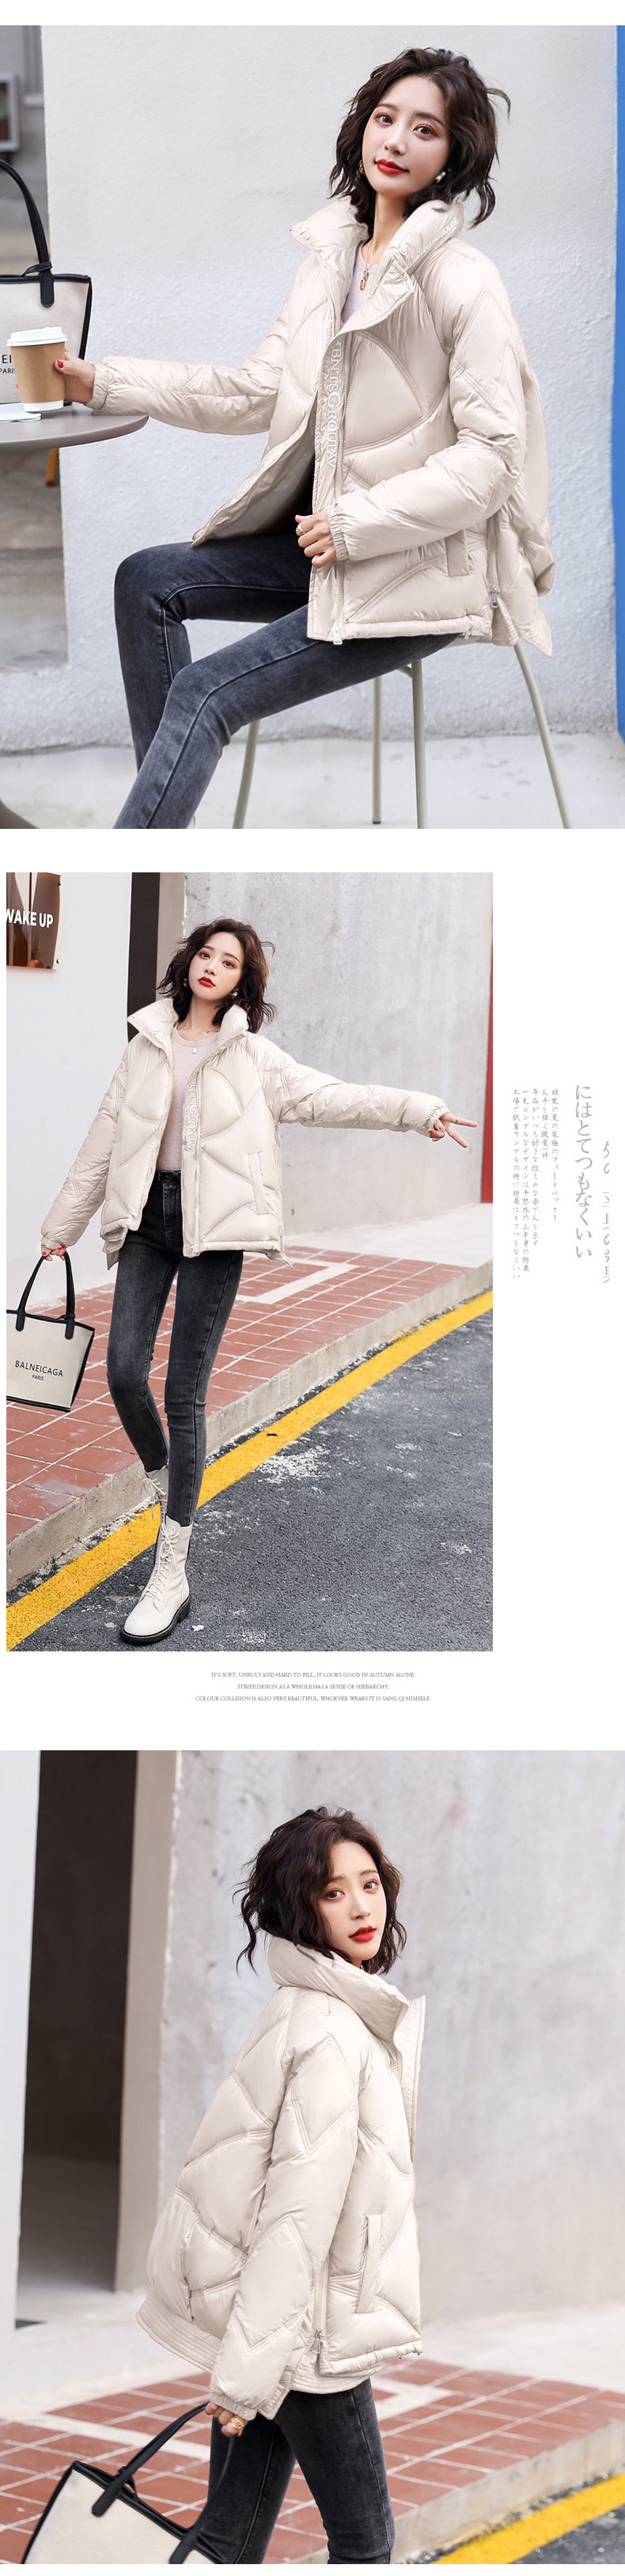 Puffer Jacket Outfit Women Winter Casual Style Streetwear15